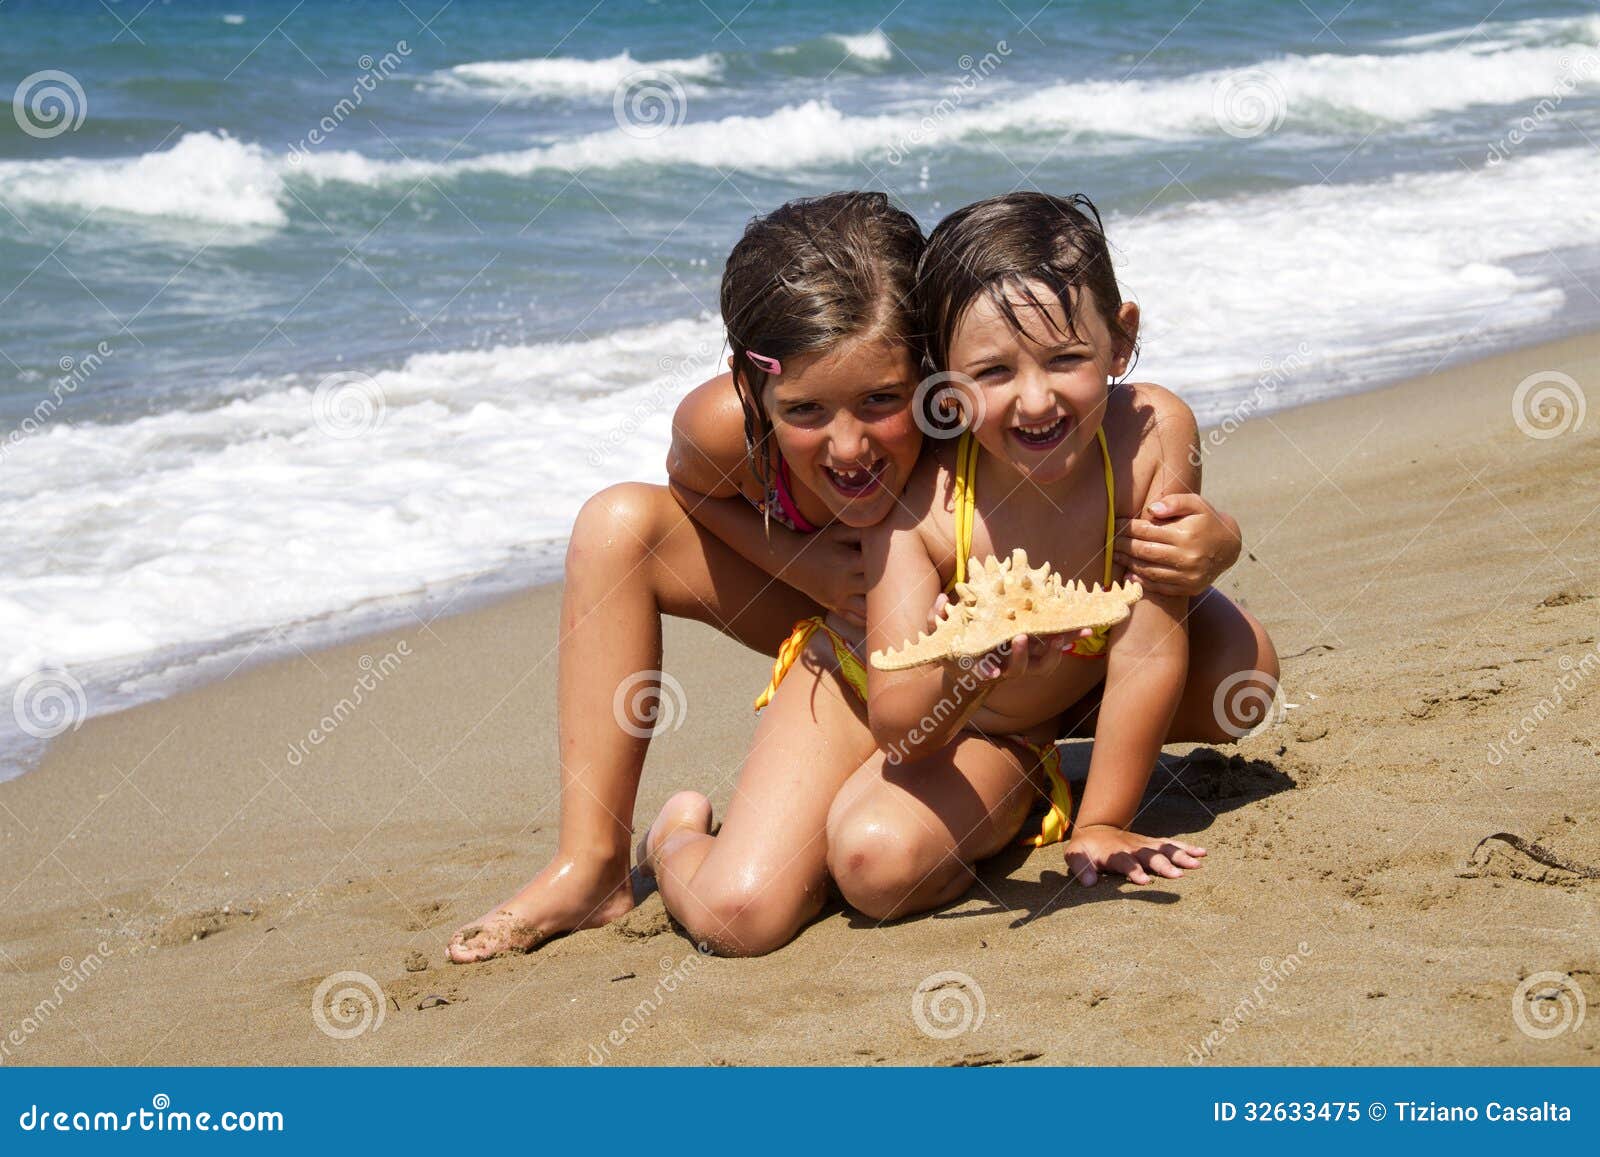 фото дети на голом пляже фото 68